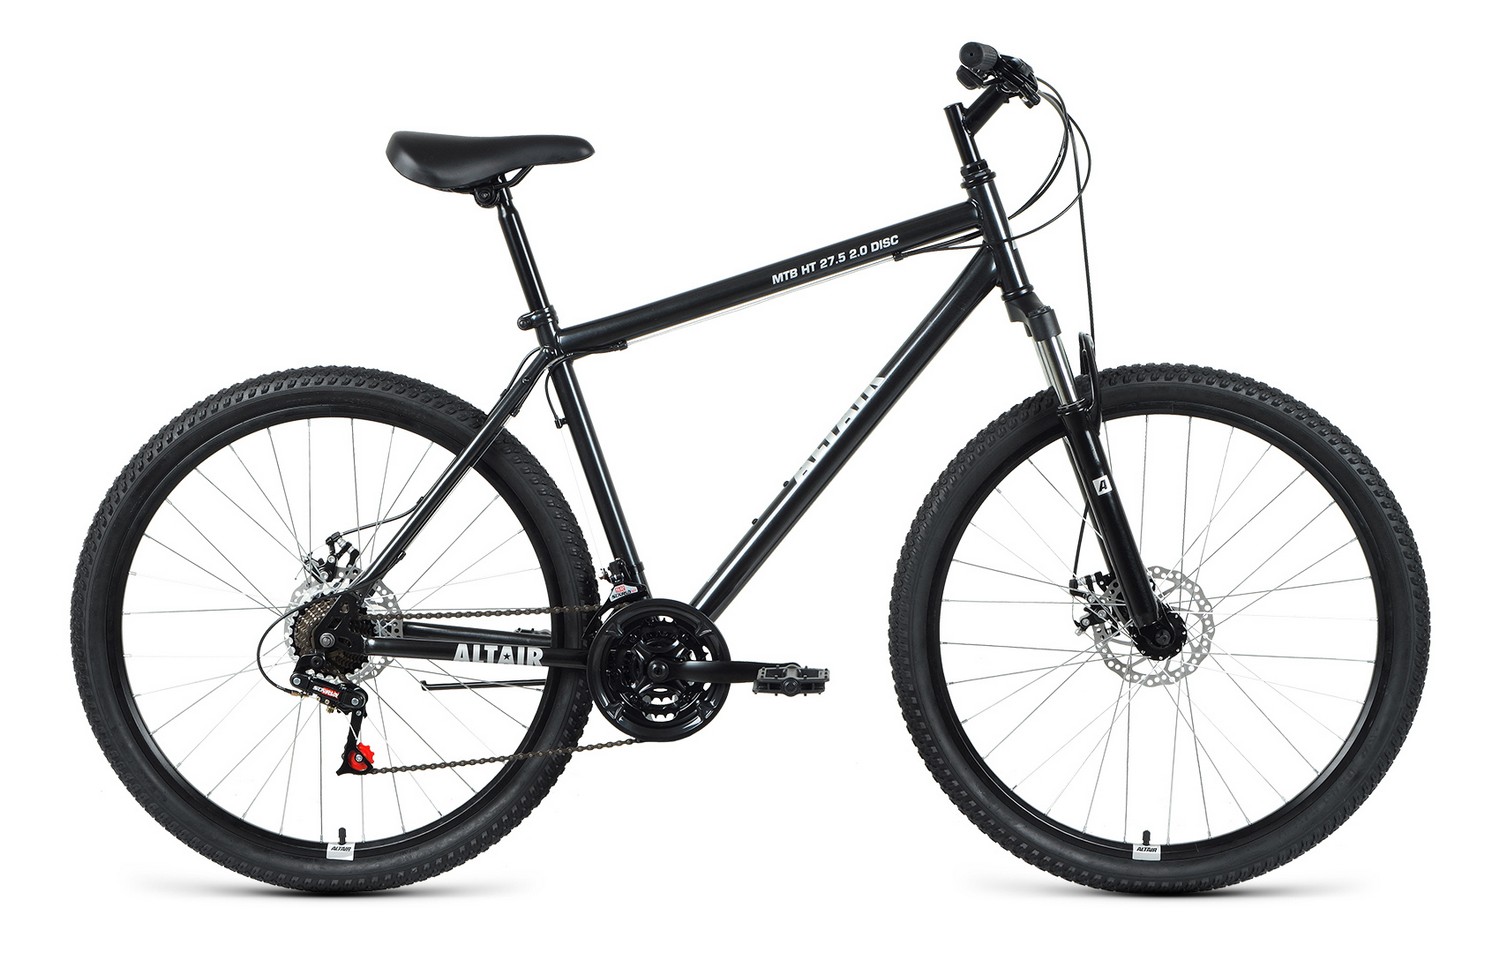 Горный велосипед Altair MTB HT 27.5 2.0 Disc, год 2021, цвет Черный-Серебристый, ростовка 17